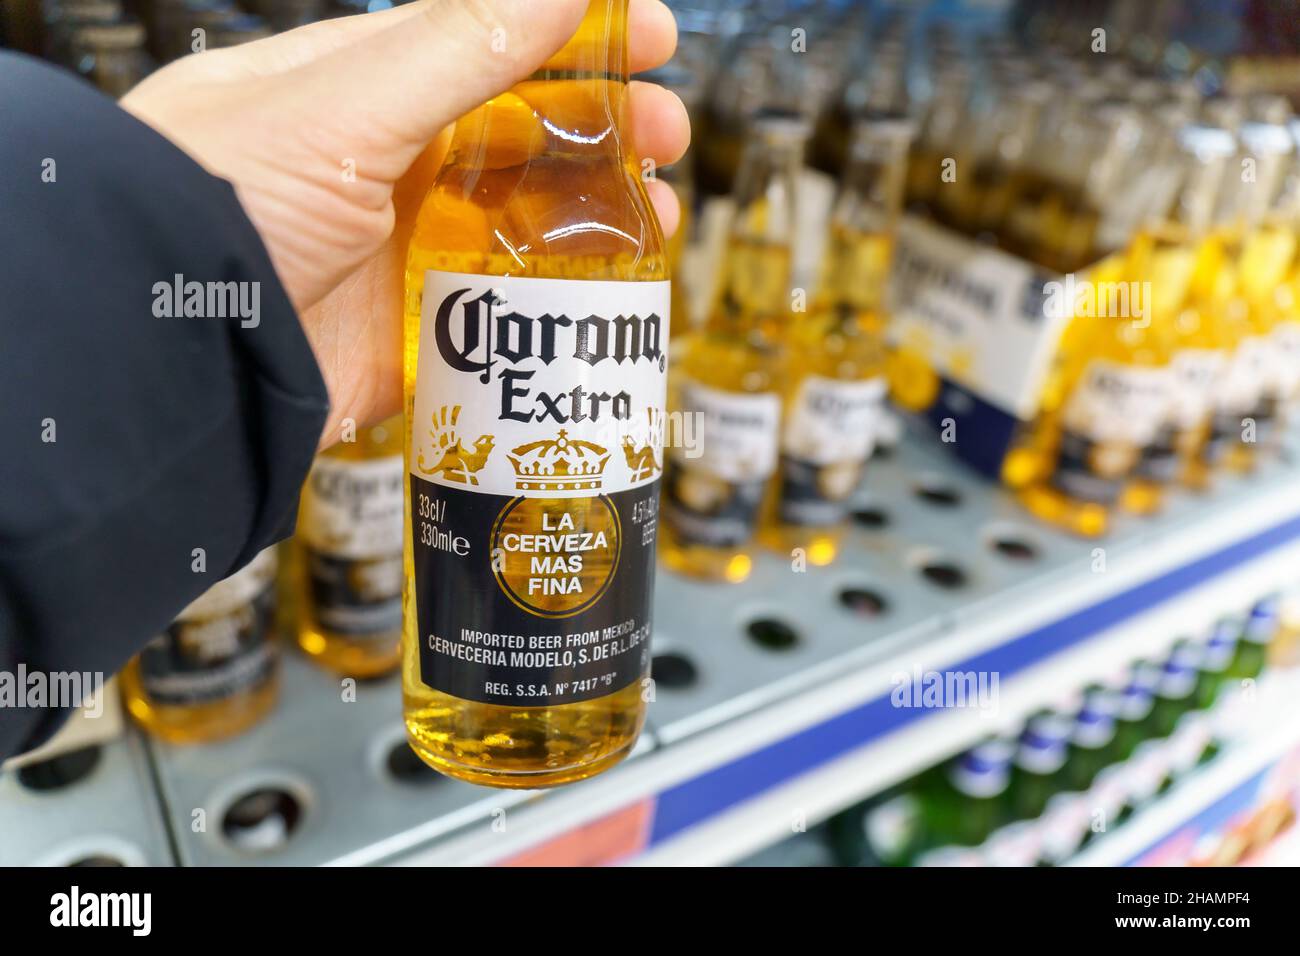 Tyumen, Russie-décembre 02, 2021: Corona Extra, l'une des bières les plus vendues dans le monde est une bière pâle.Vente dans un hypermarché Banque D'Images